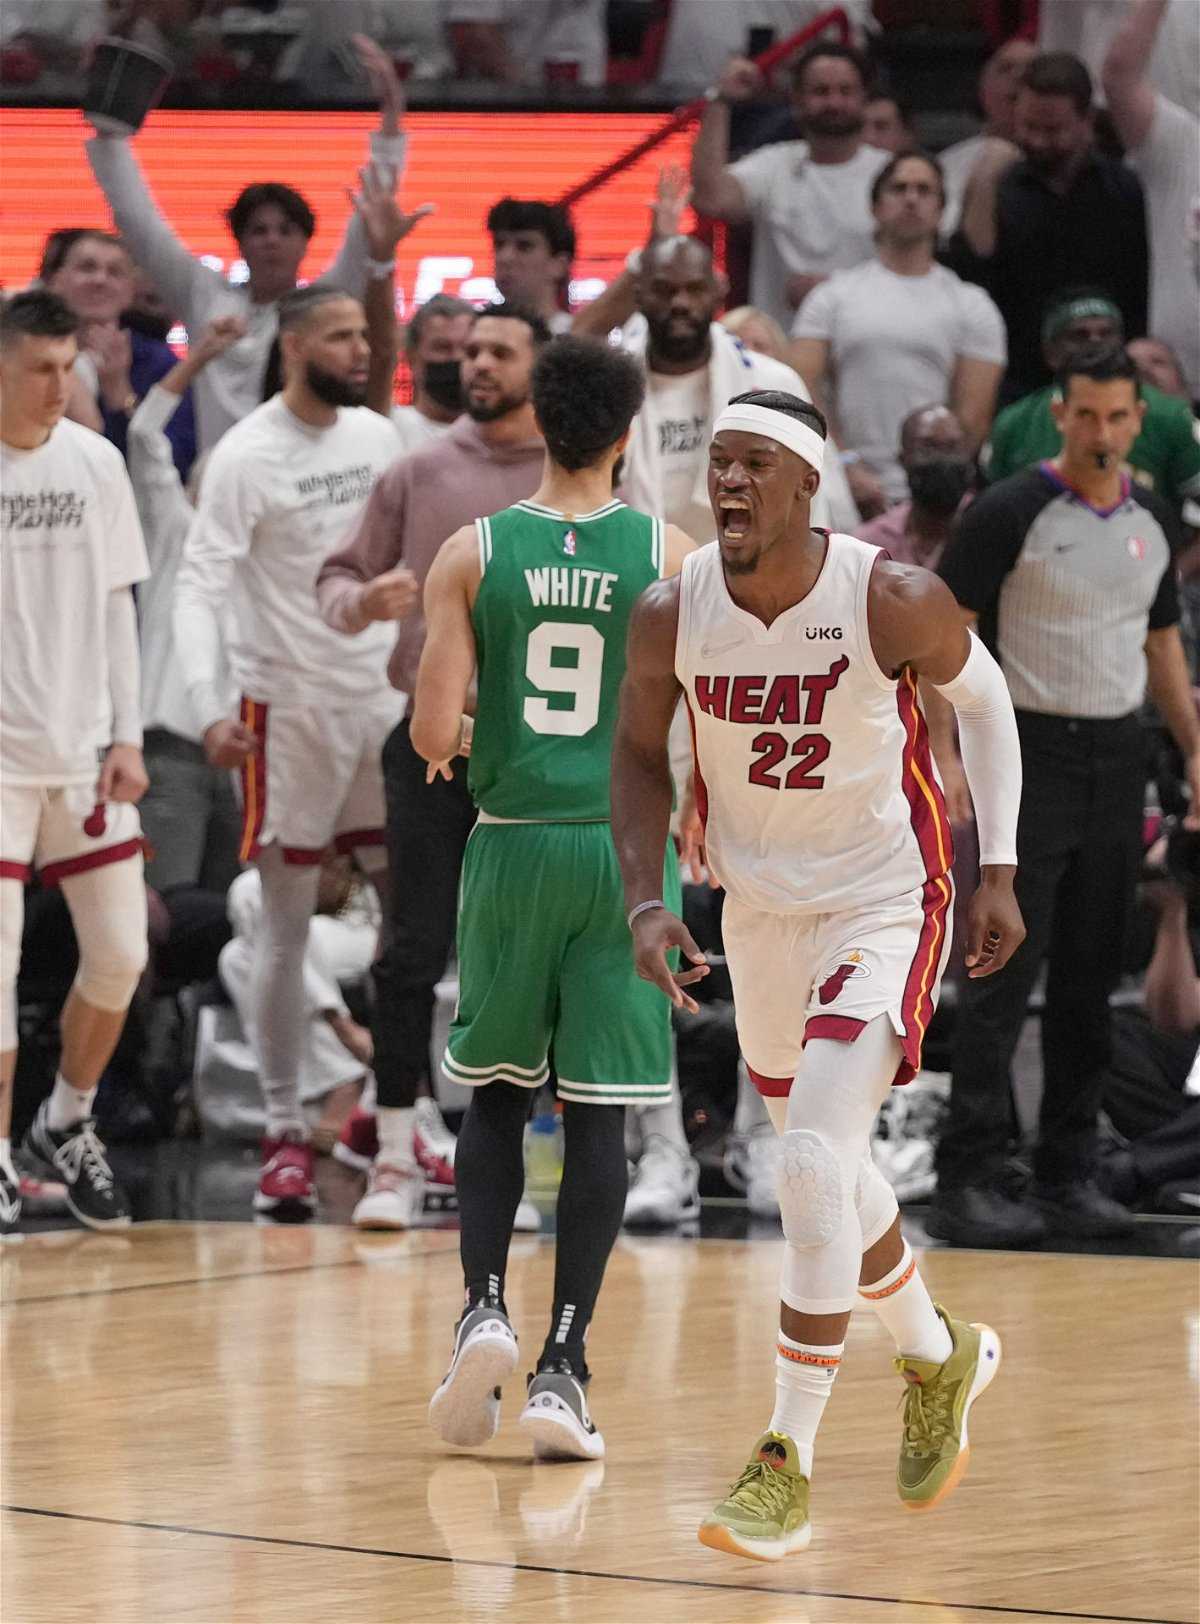 La controverse éclate au Celtics-Heat Game 7 alors que l'erreur de Jimmy Butler s'avère être une cause perdue